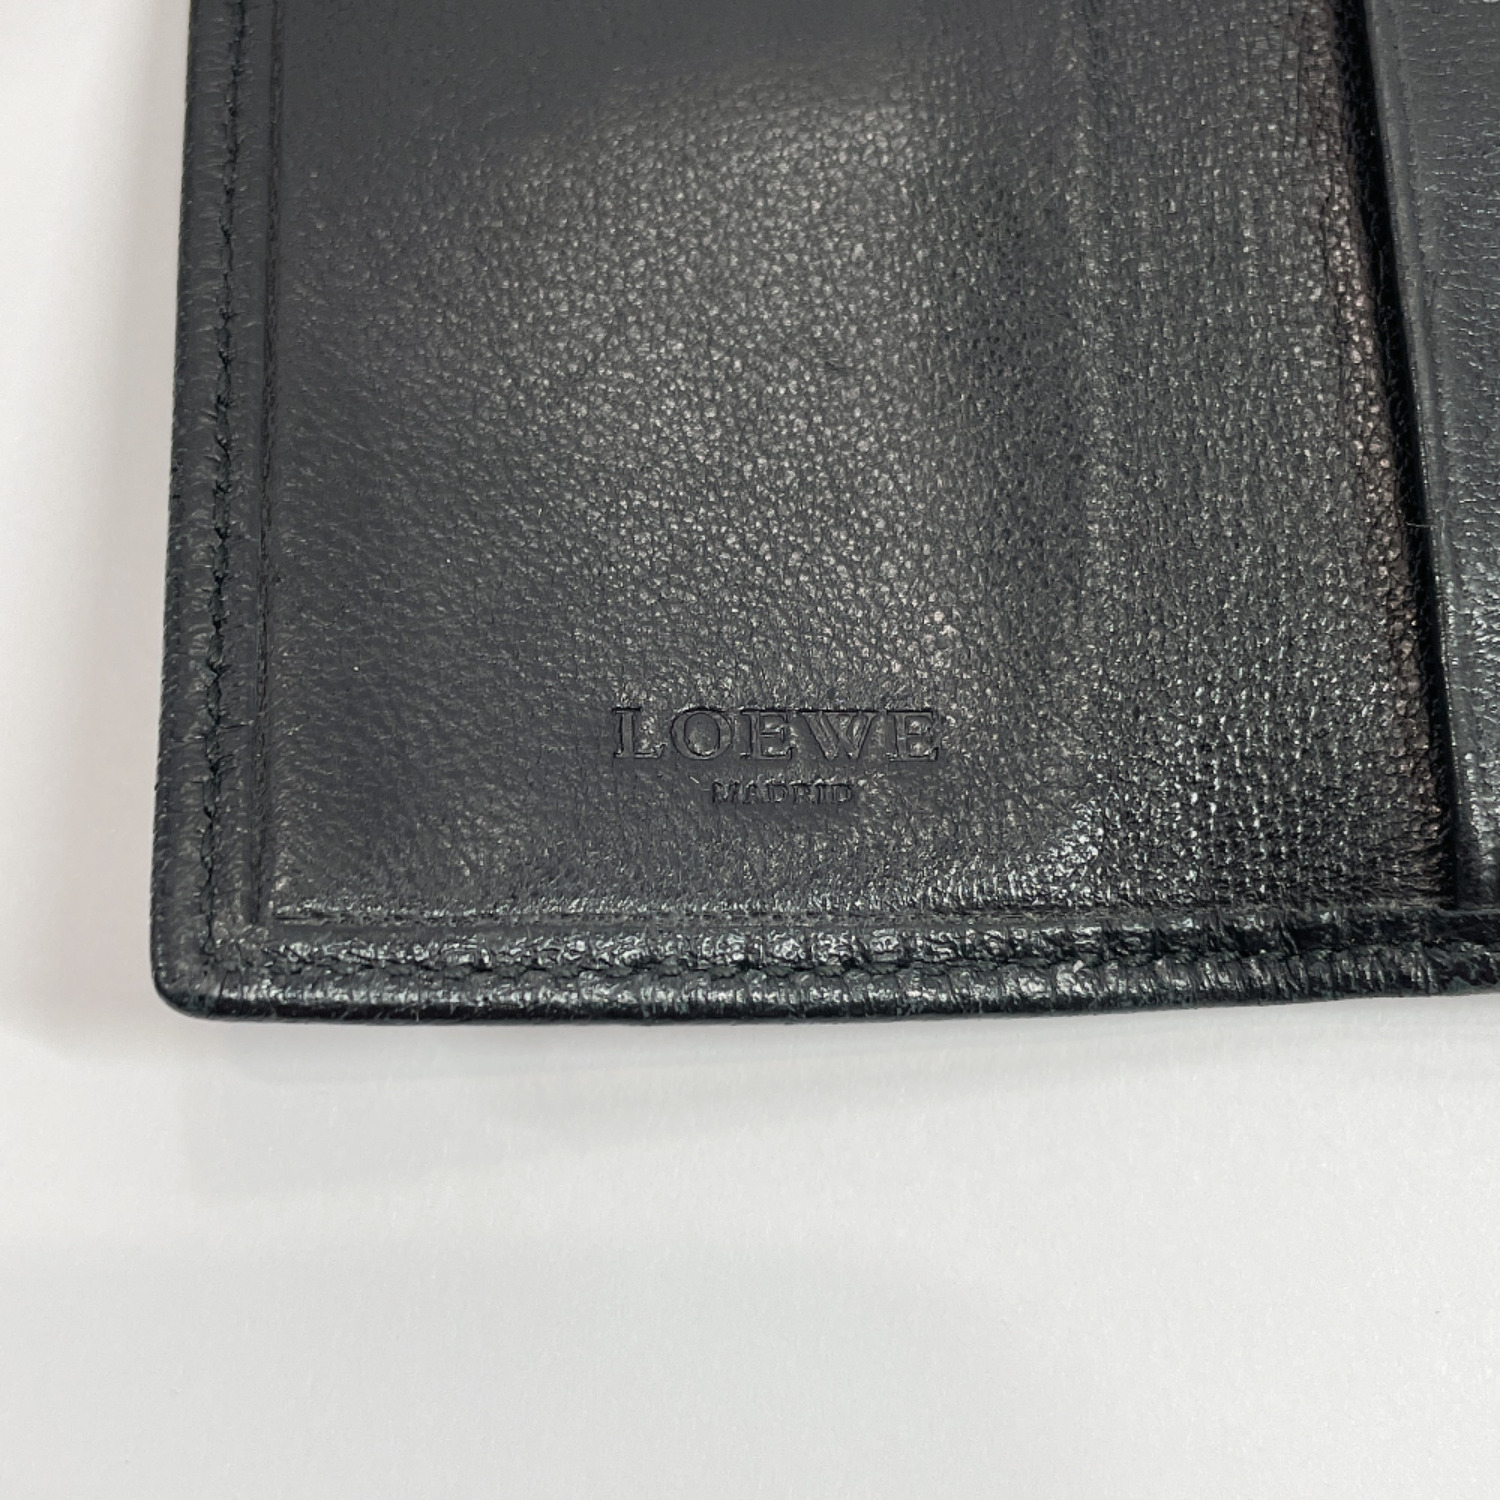 LOEWE key holder leather unisex | eBay